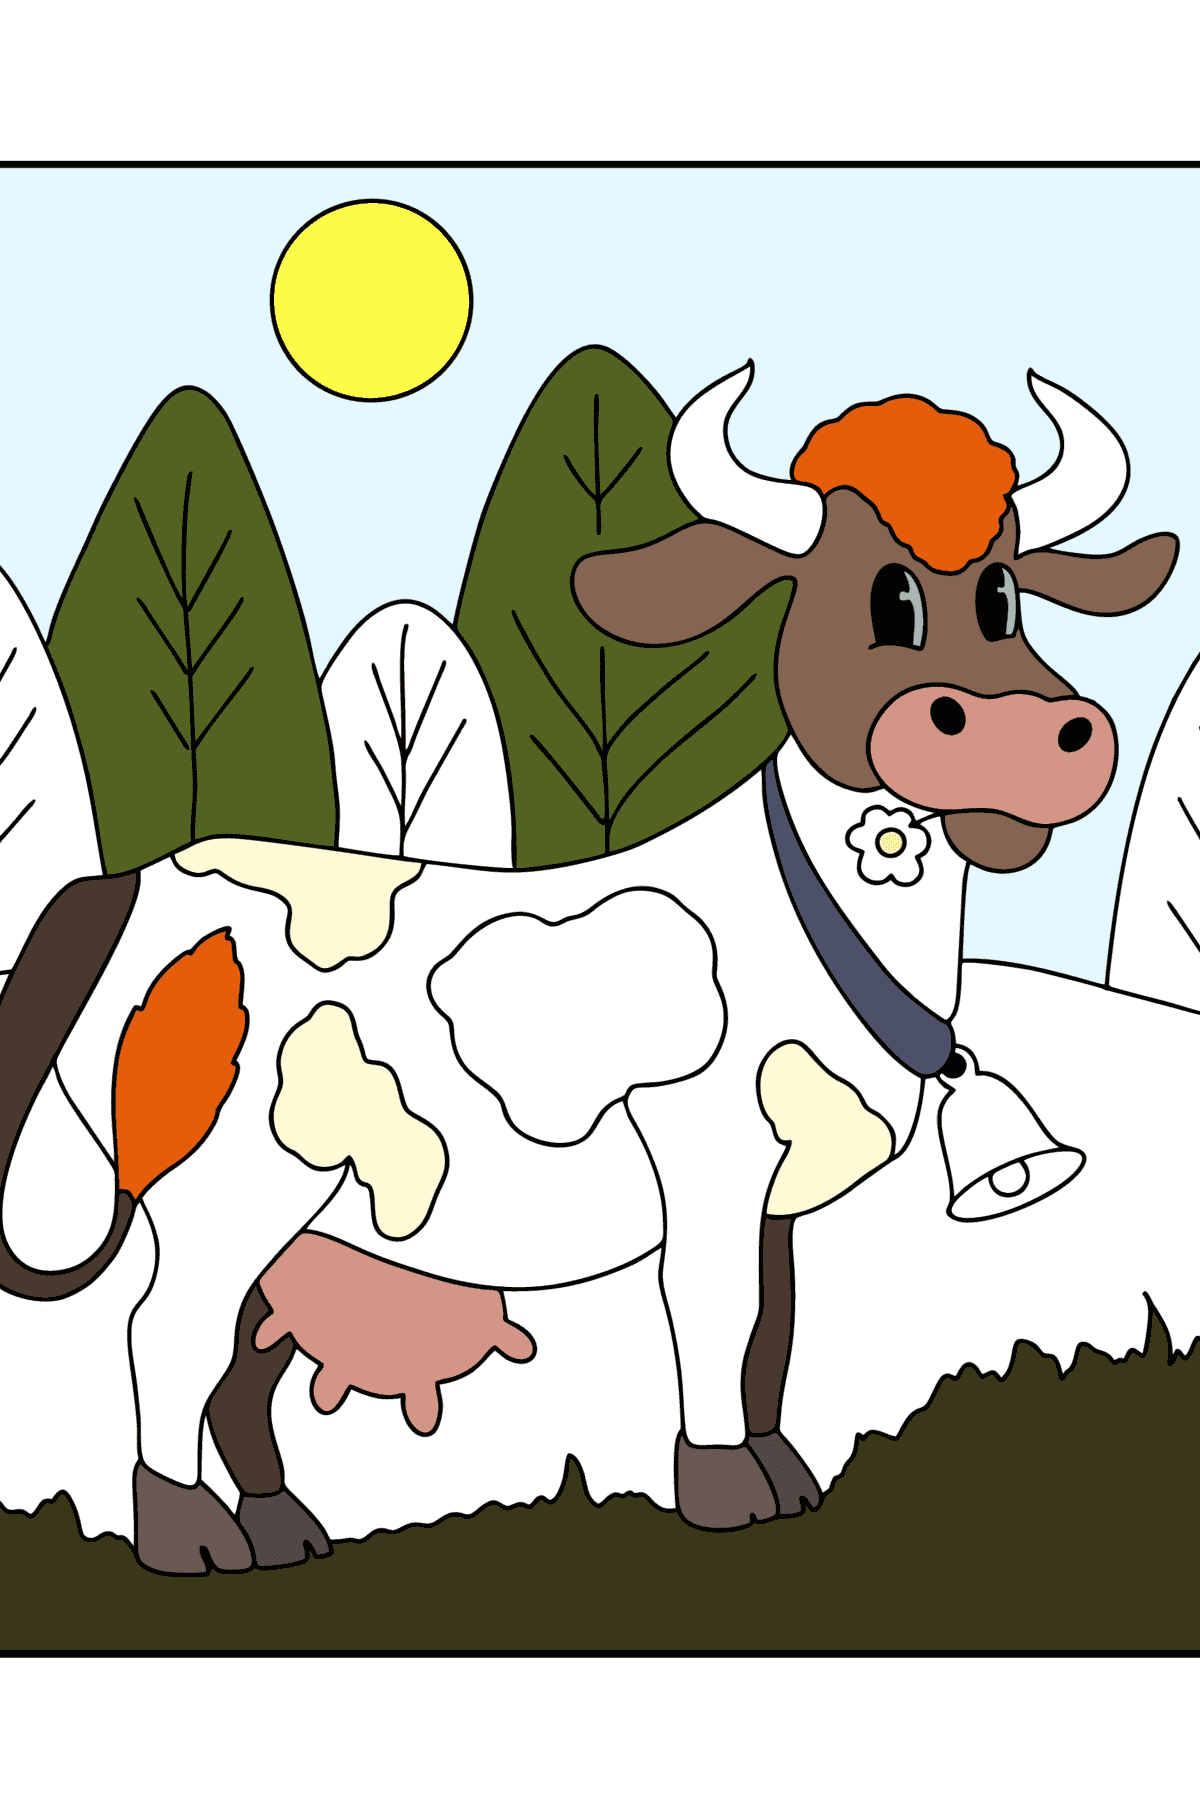 Disegno da colorare di mucca - Disegni da colorare per bambini